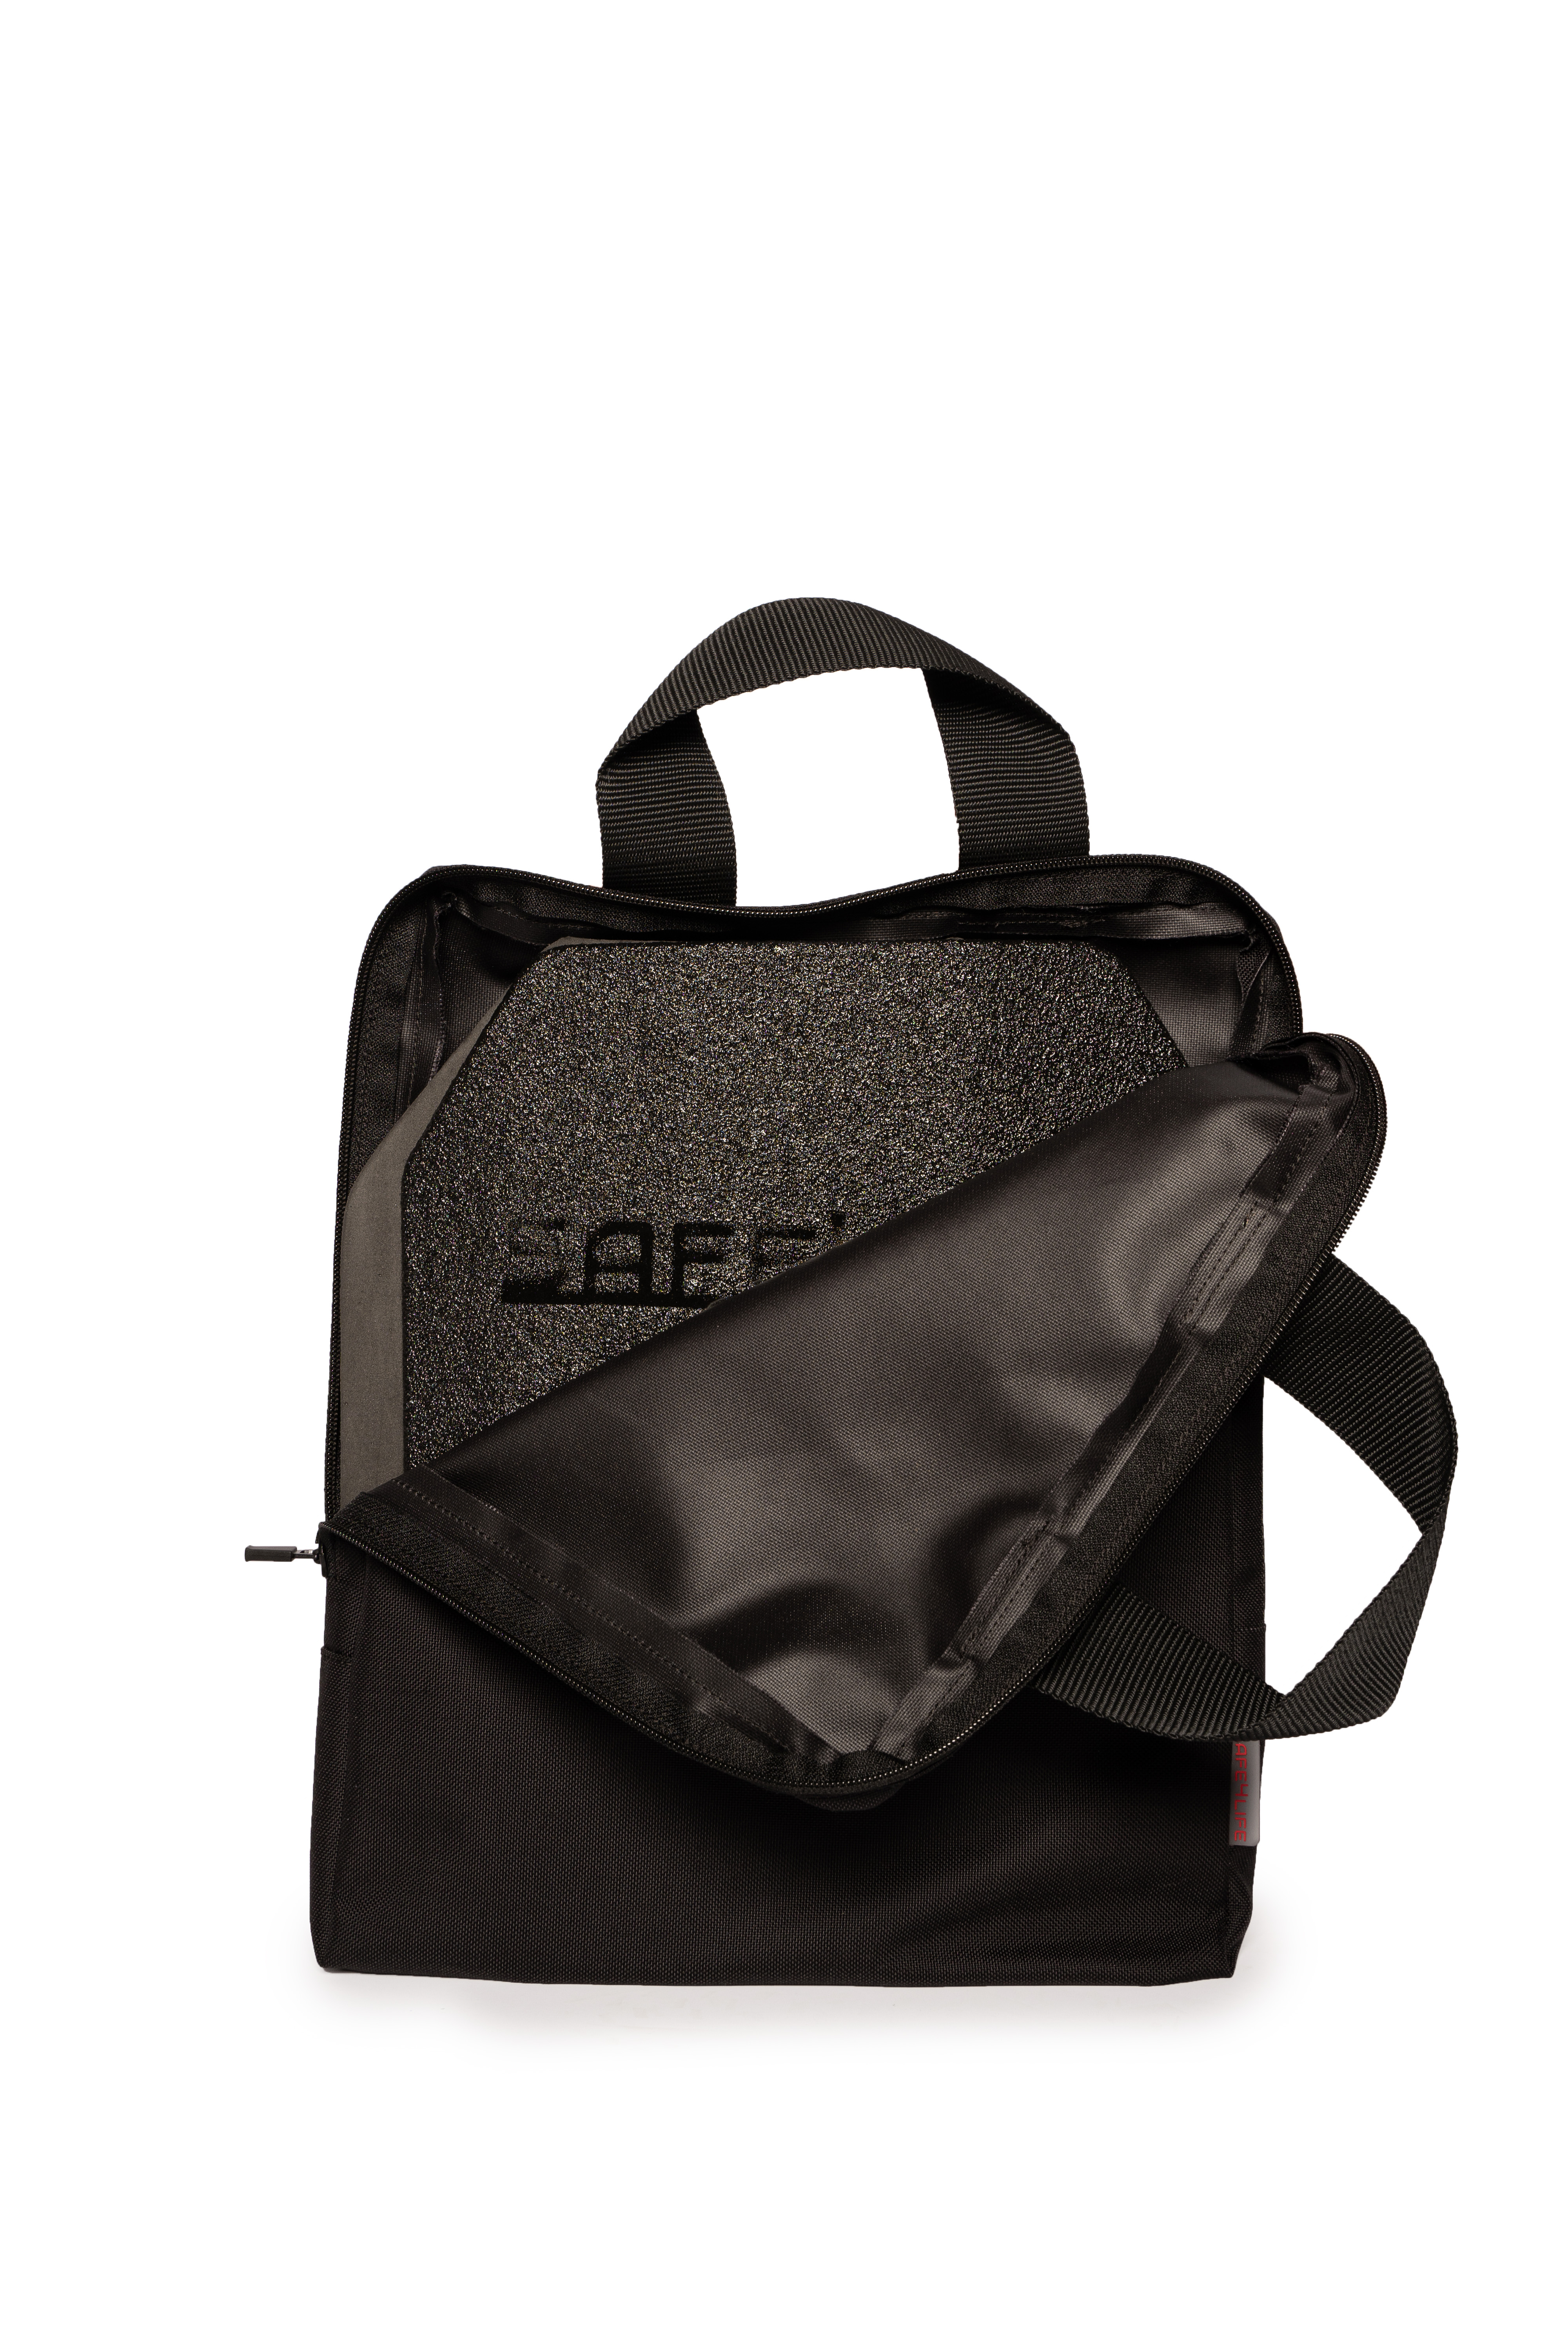 S4L - Tasche "groß" für Safe4Life Original